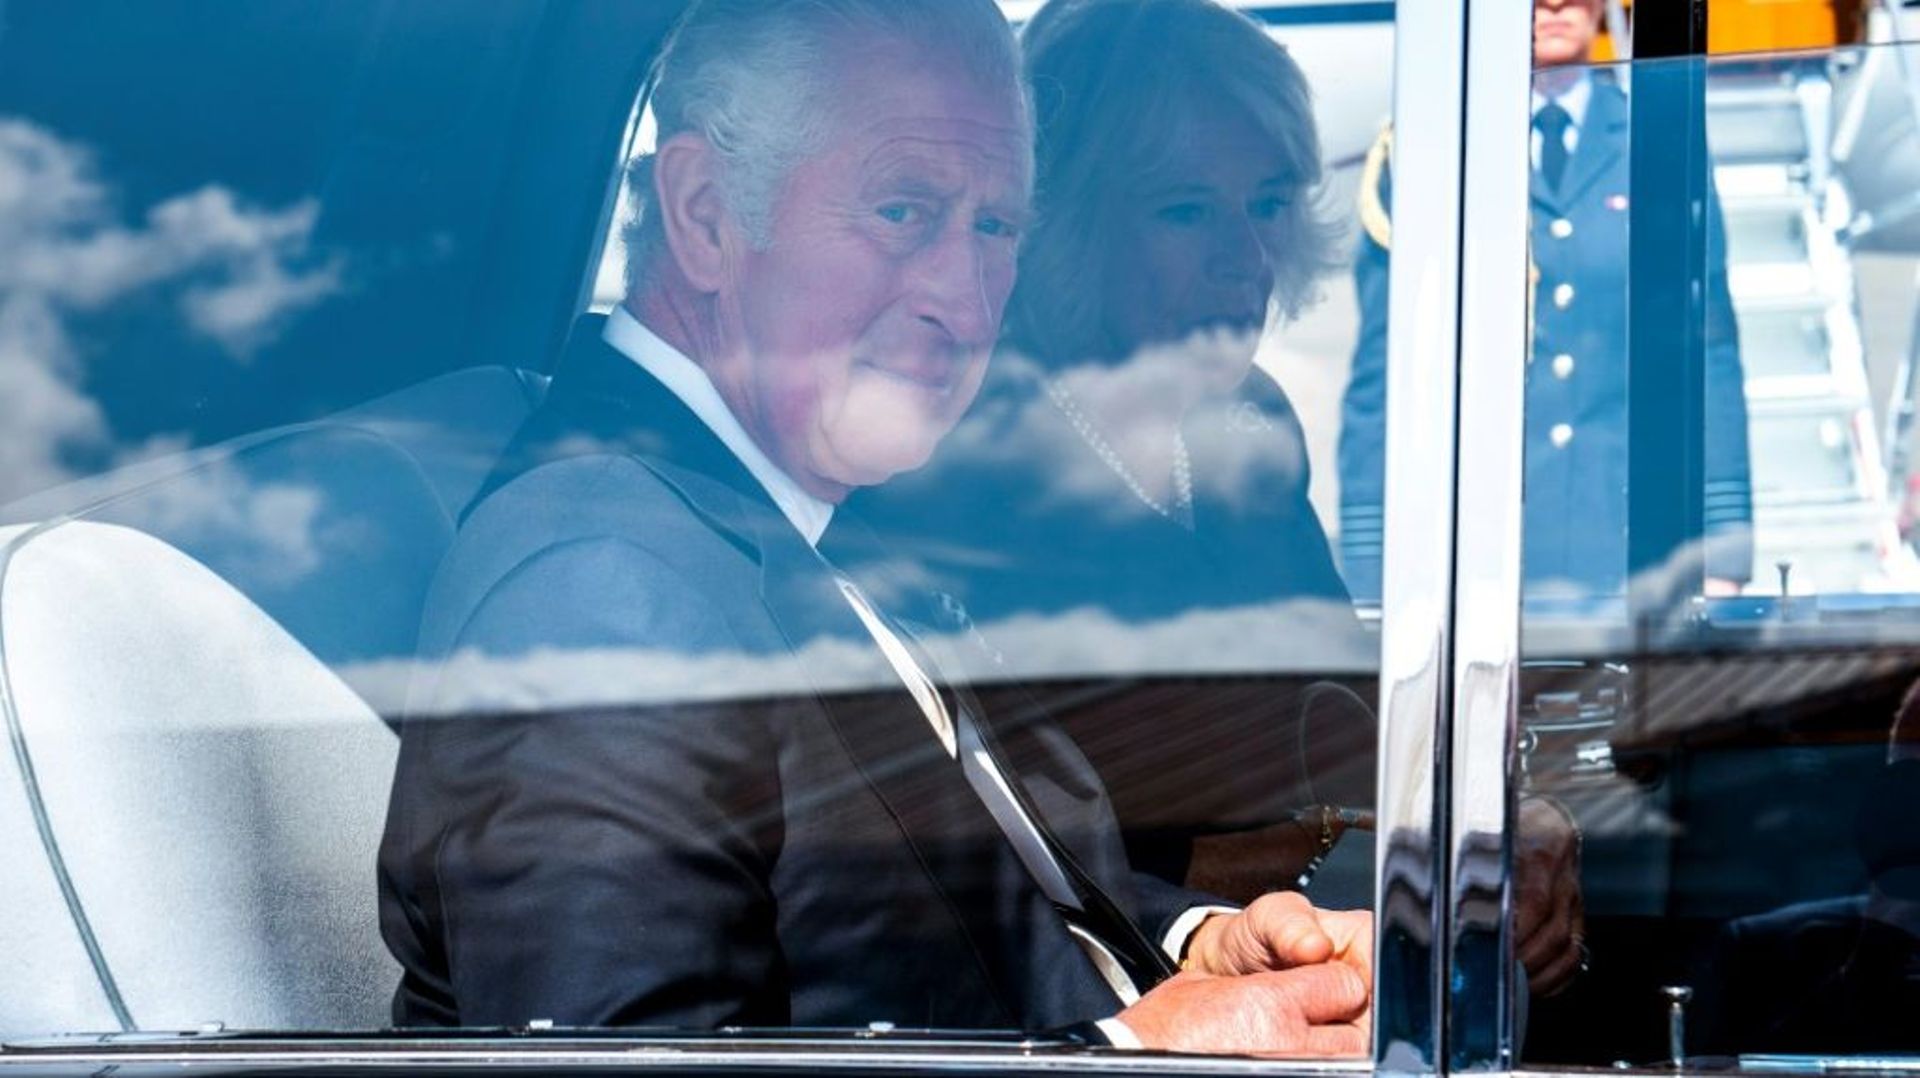 Le roi Charles III et la reine consort Camilla quittent en voiture l'aéroport de Northolt, à l'ouest de Londres, pour rejoindre le palais de Buckhingham, au lendemain du décès de la reine Elizabeth II, le 9 septembre 2022